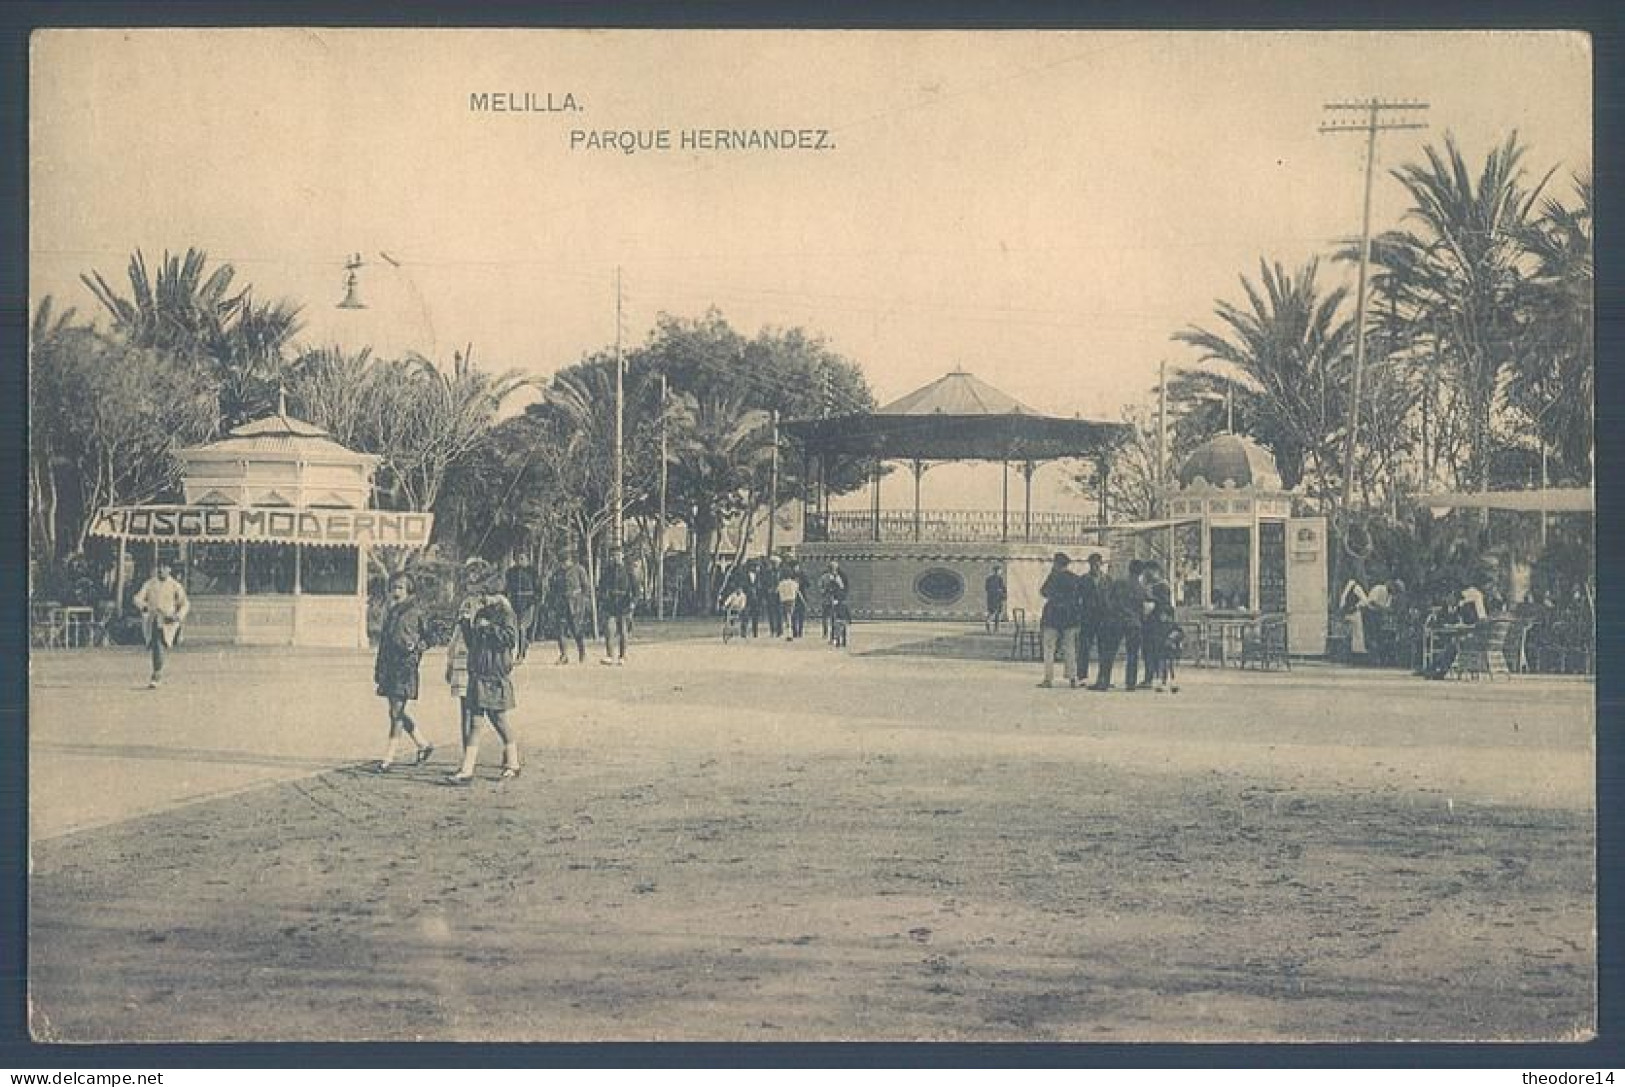 MELILLA Kiosco Moderno Parque Hernandez - Melilla